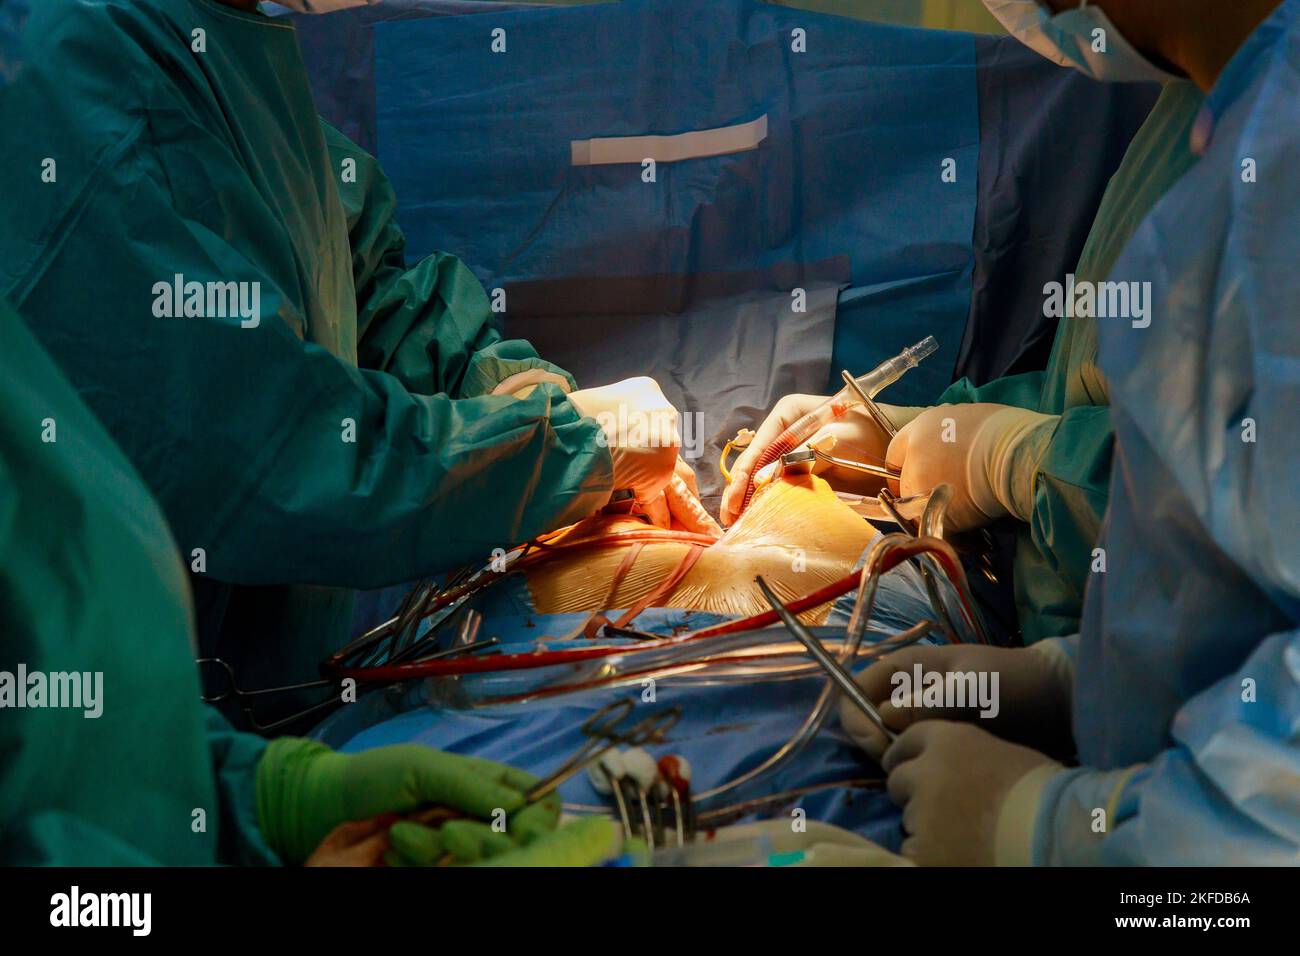 Intervento chirurgico a cuore aperto a causa di un malfunzionamento della valvola cardiaca, la sostituzione della valvola viene eseguita nella sala operatoria dell'ospedale Foto Stock